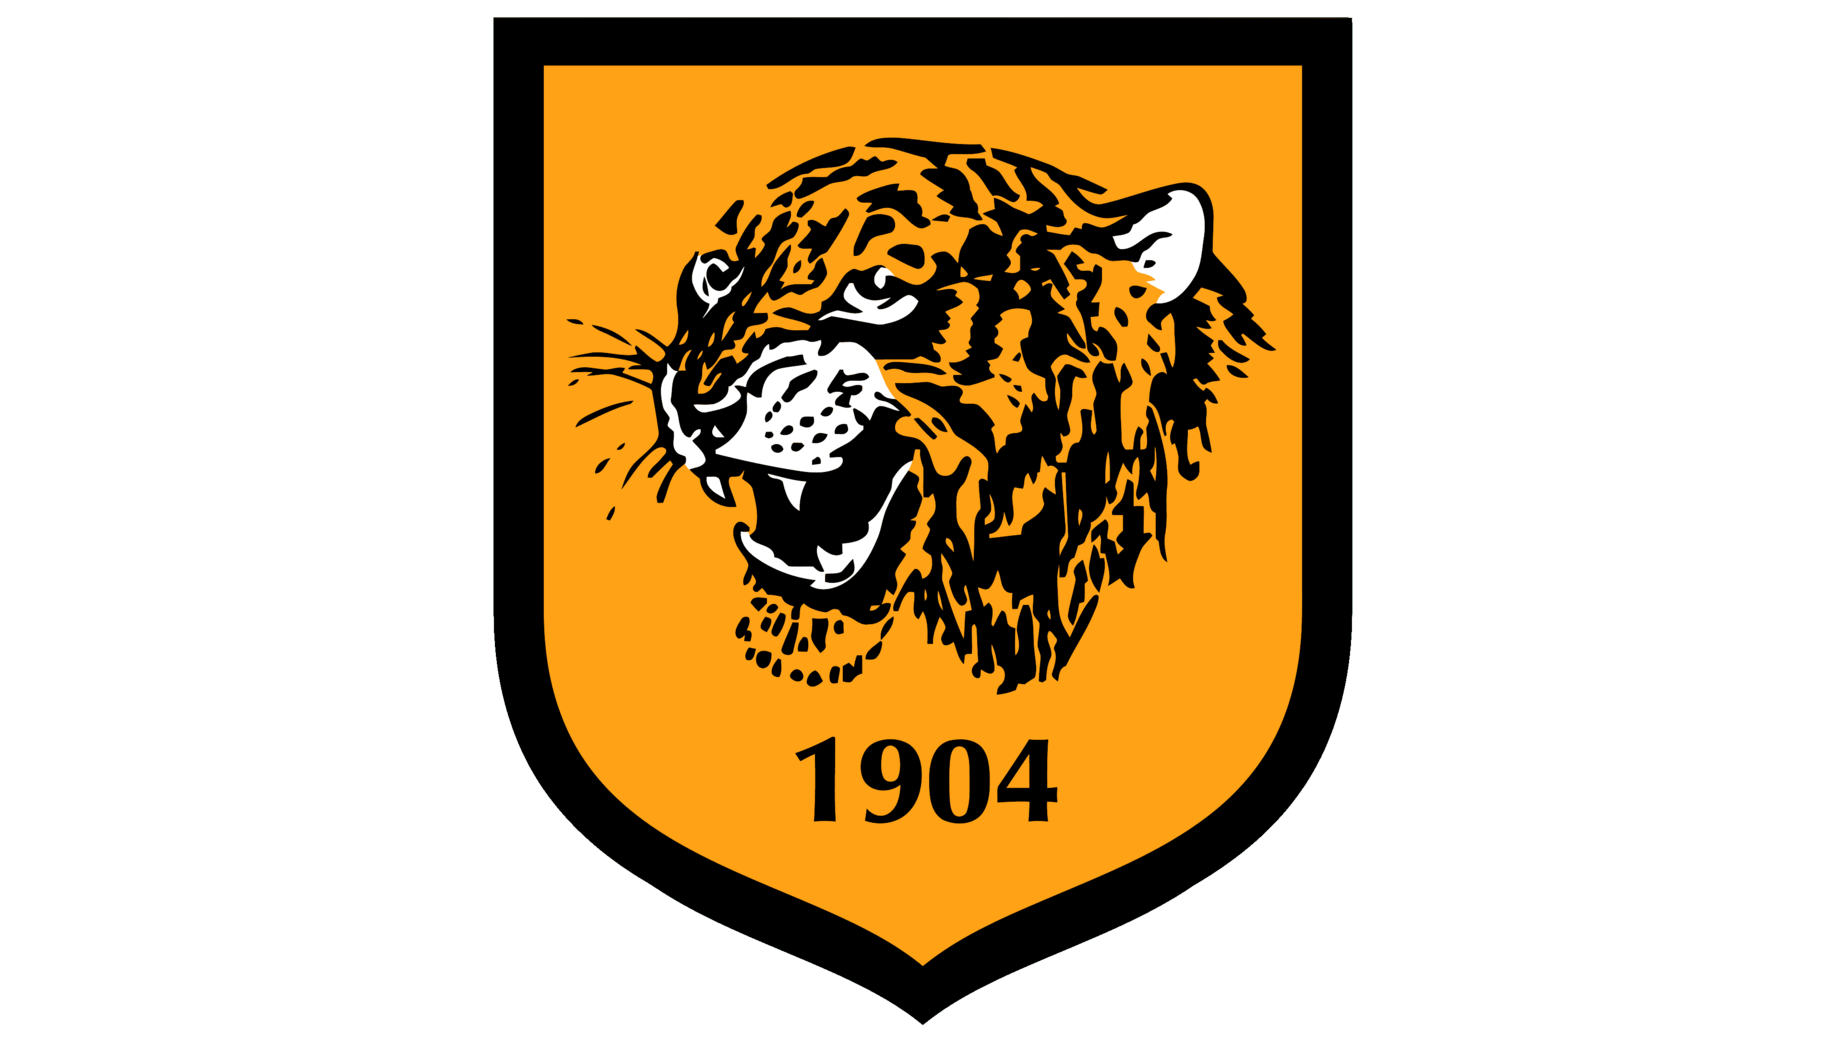 Hull city logo